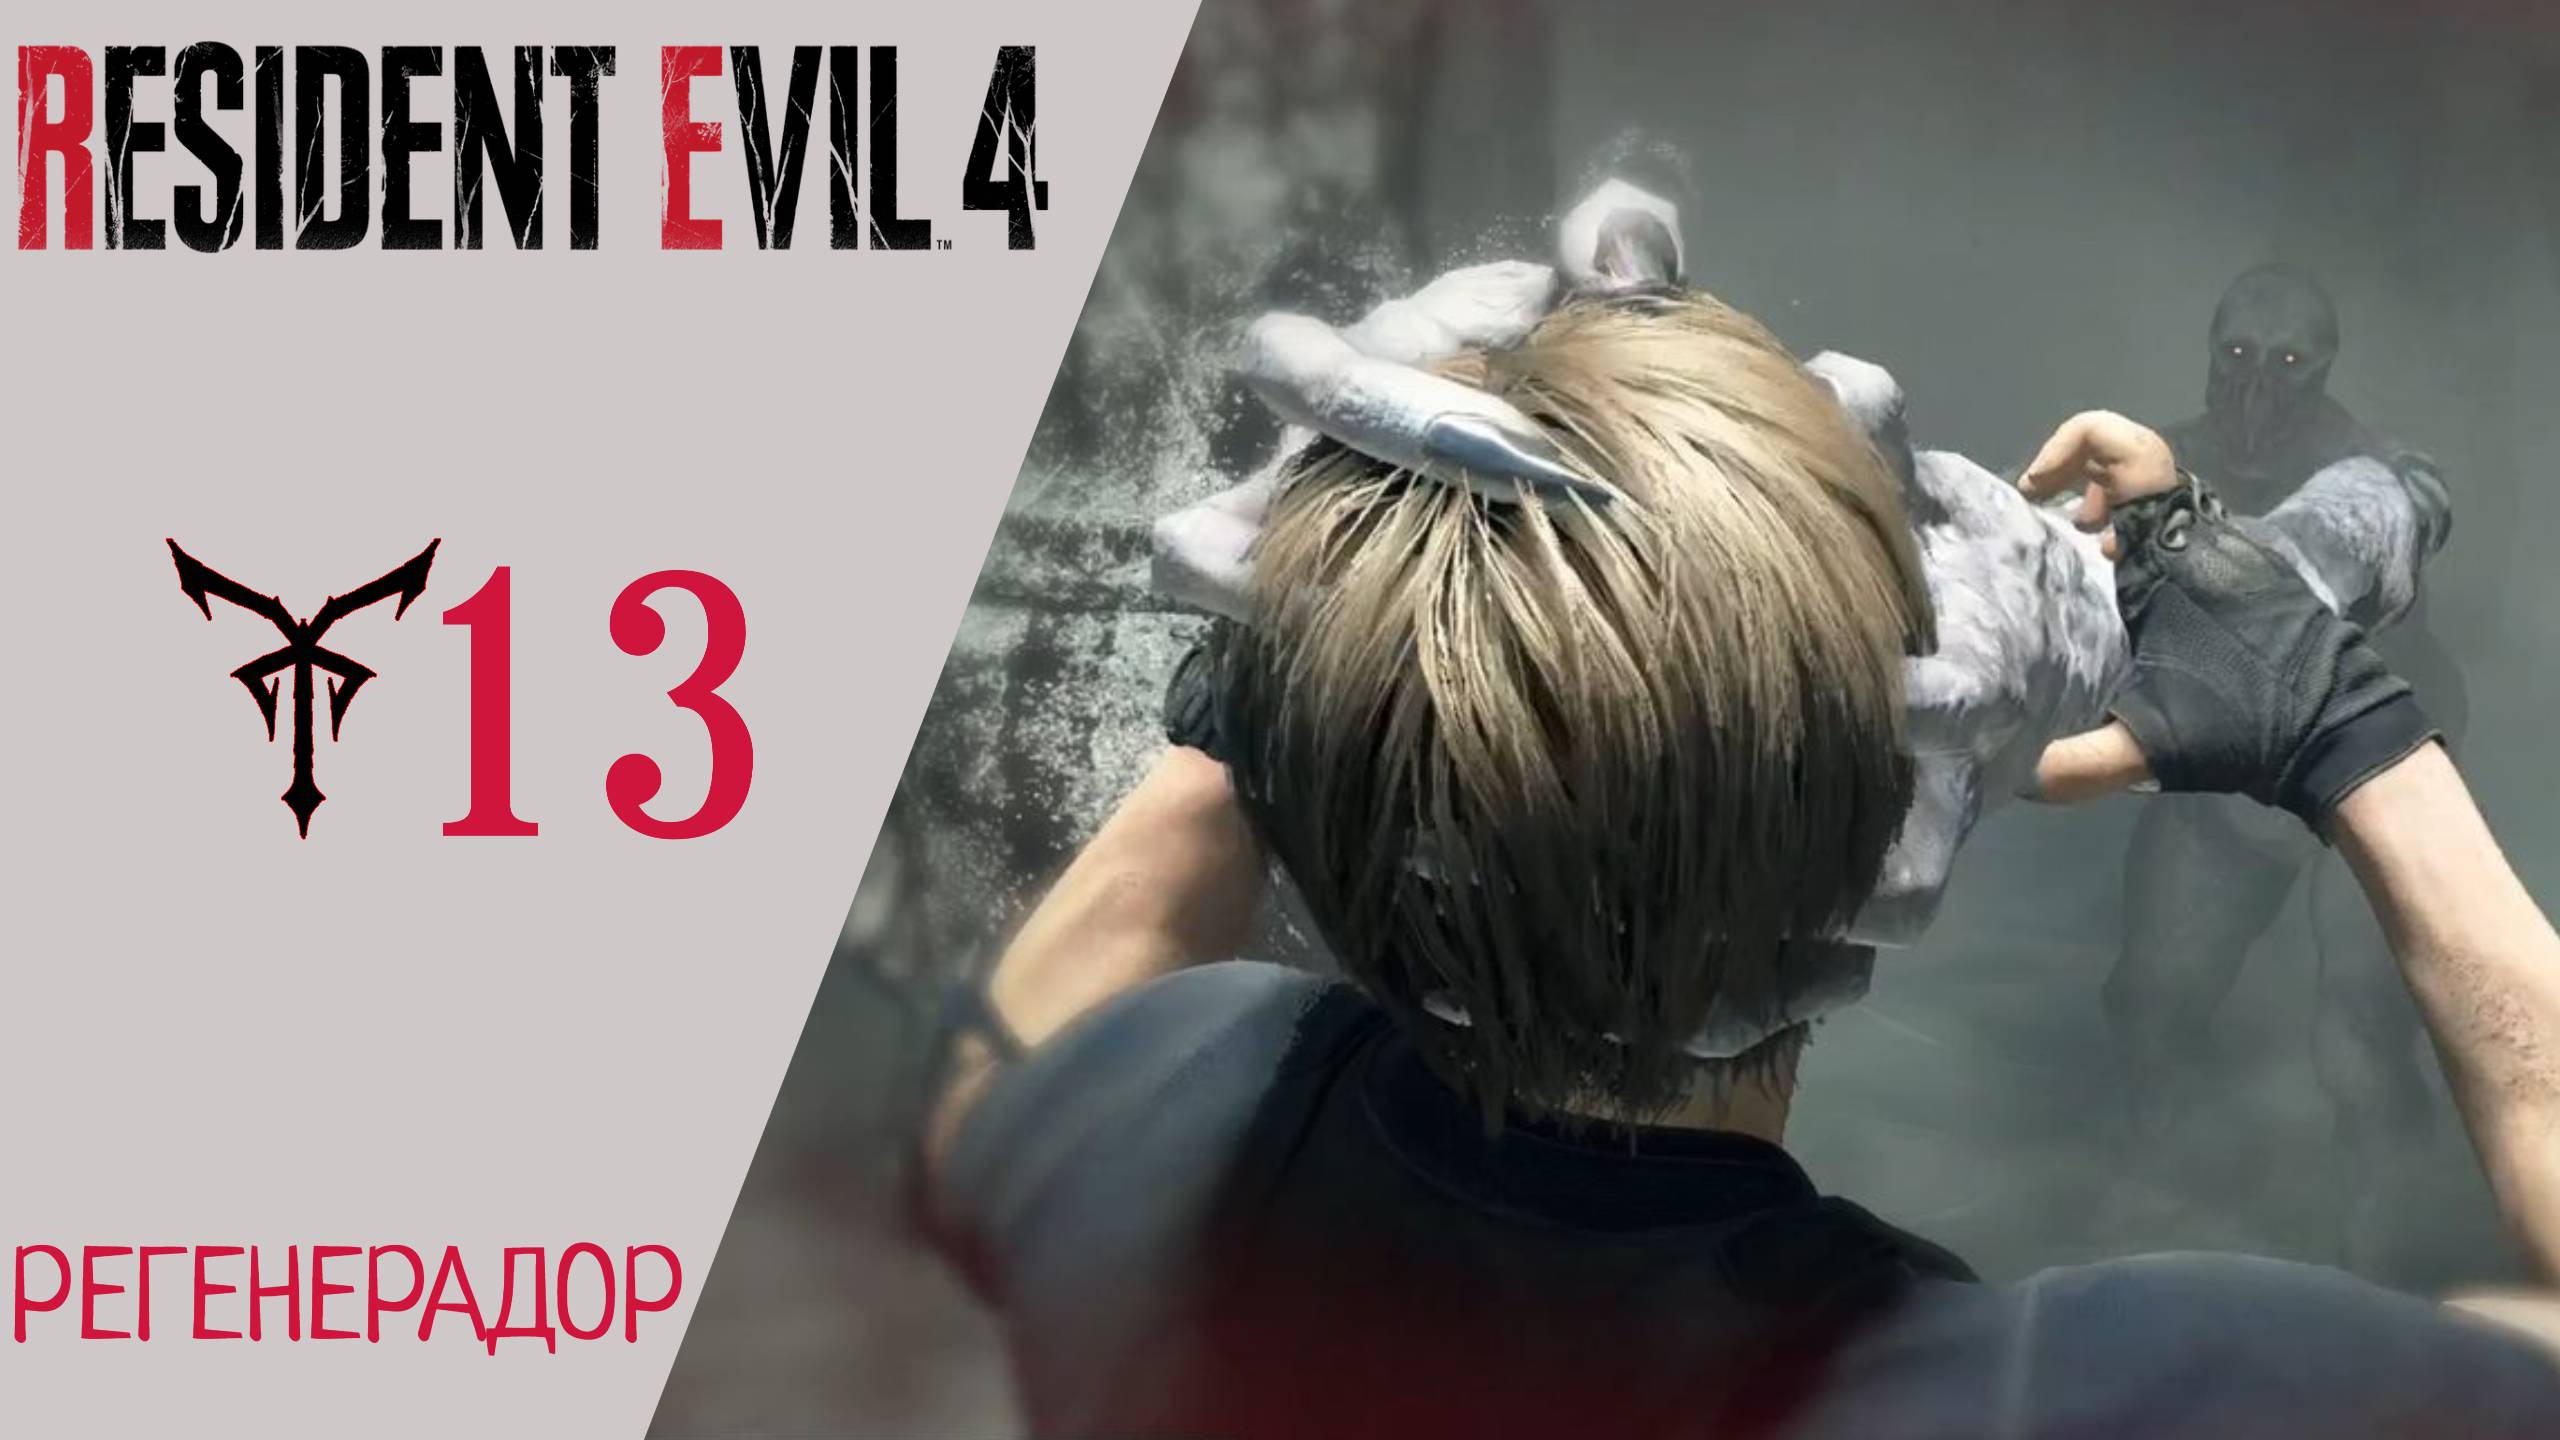 ? Прохождение Resident Evil 4 Remake Глава 13 ОСТРОВ Регенератор | Резидент Эвил 4 Ремейк